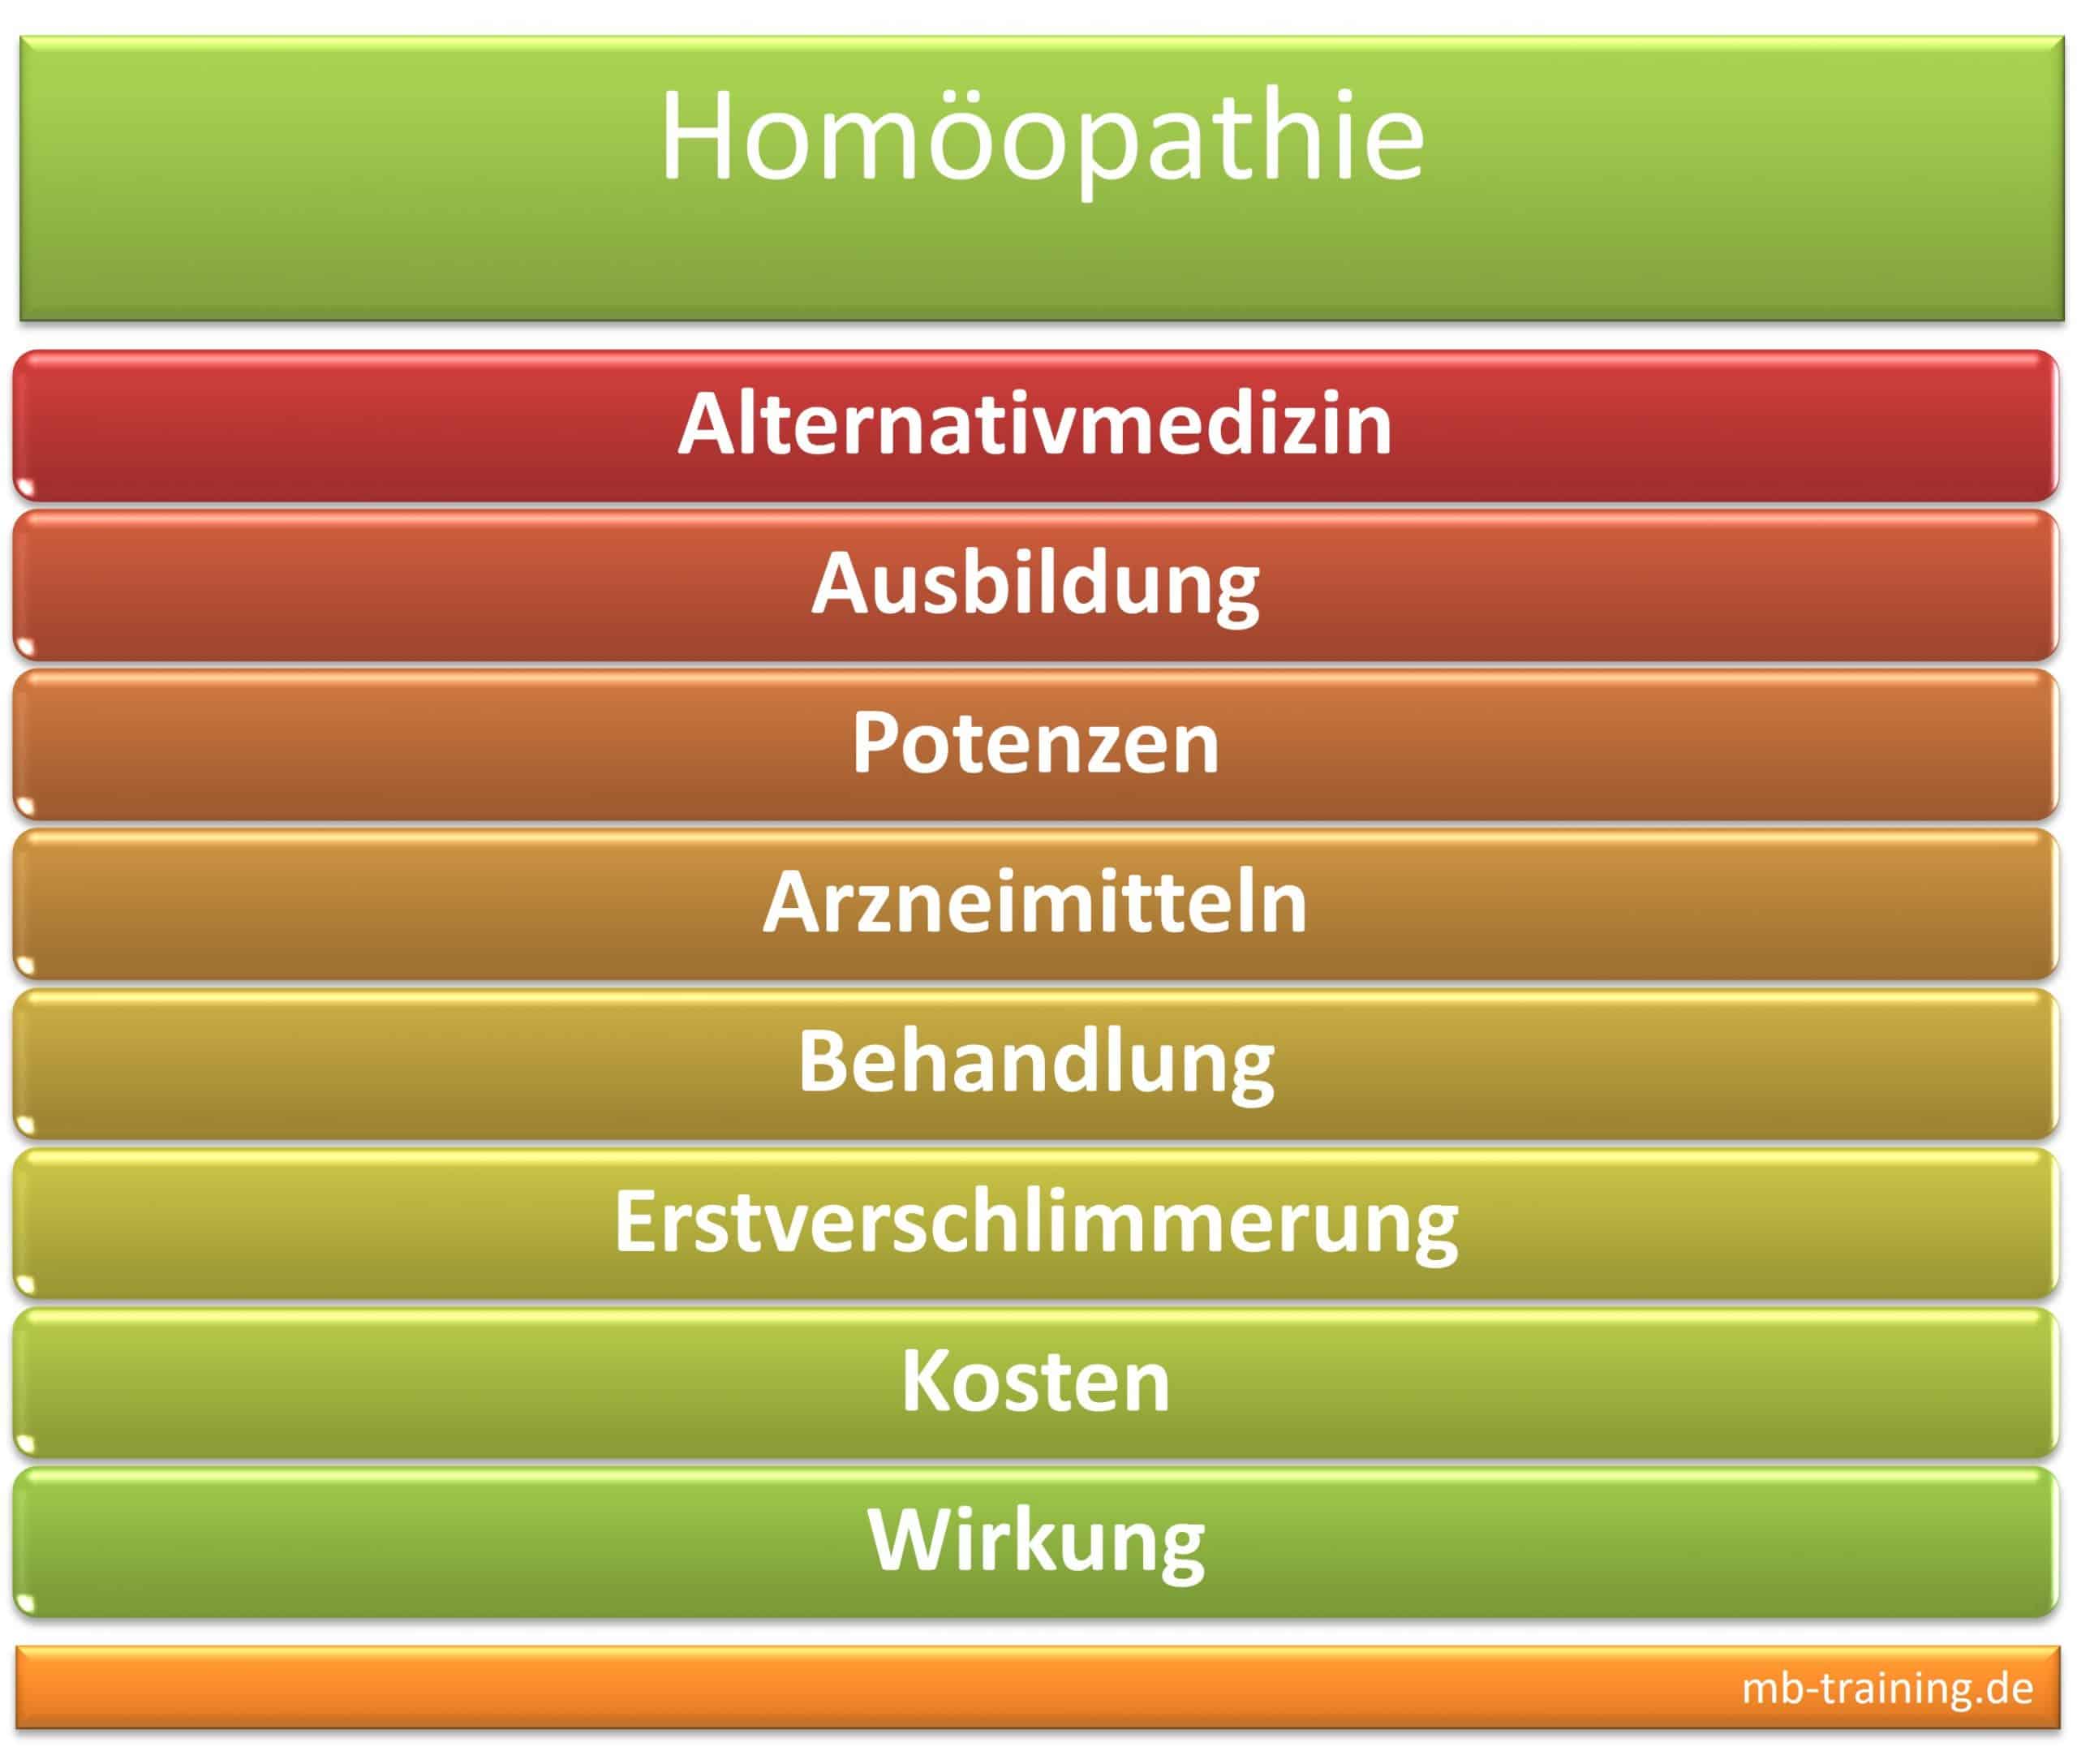 Homöopathie Ausbildung, Info zu Potenzen, Arzneimittel, Behandlung, Erstverschlimmerung sowie zu den Kosten und der Wirkung der Homöopathie.